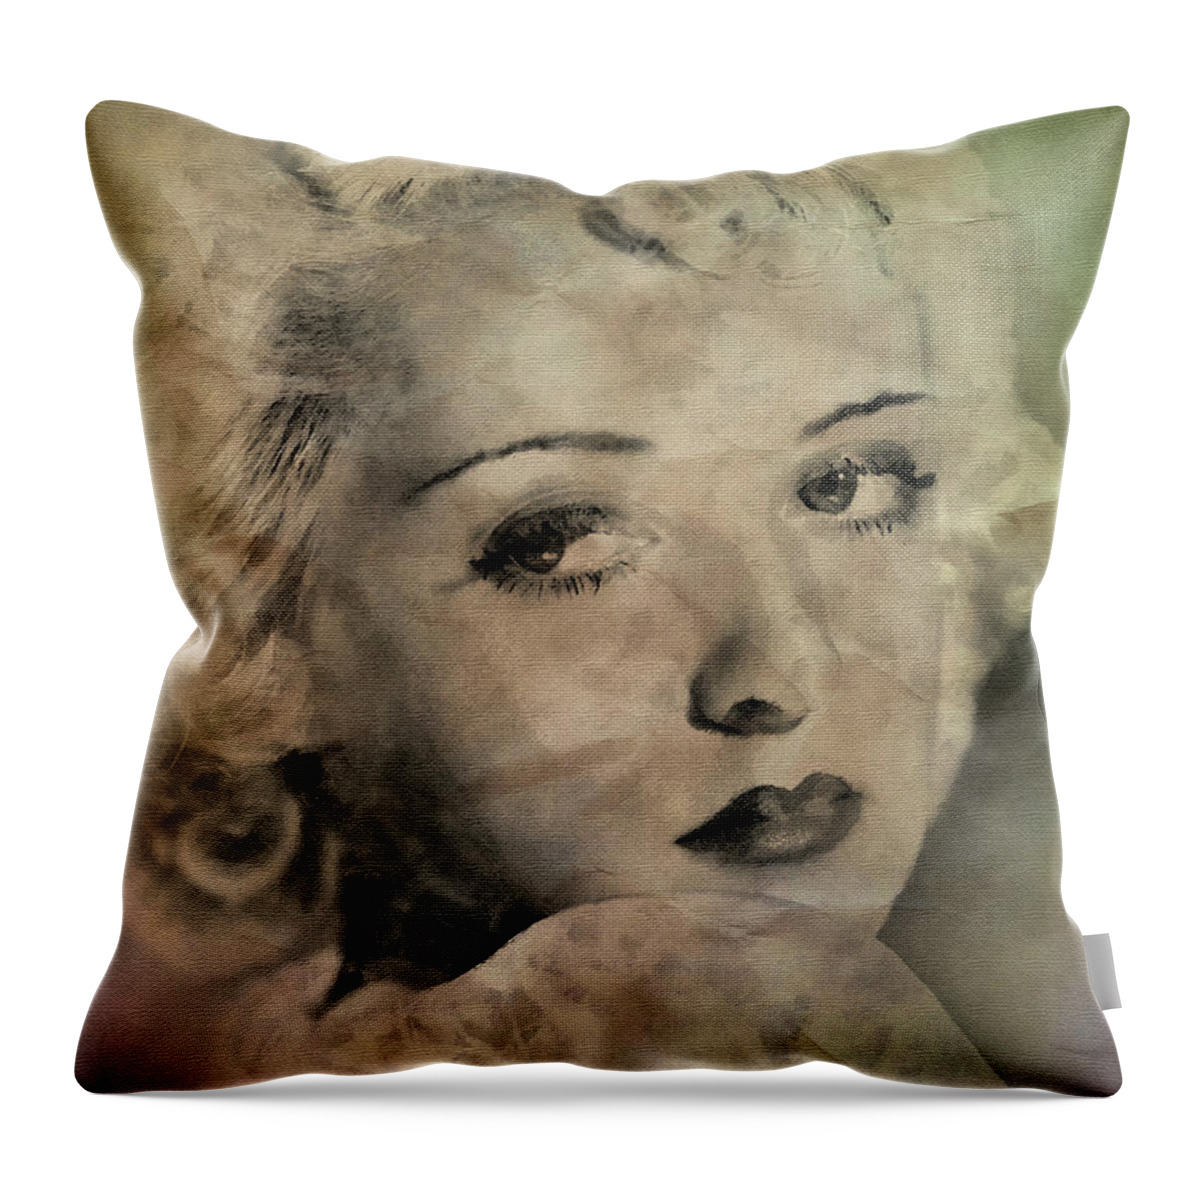 Bette Davis Throw Pillow featuring the digital art Bette Davis Eyes by Pheasant Run Gallery